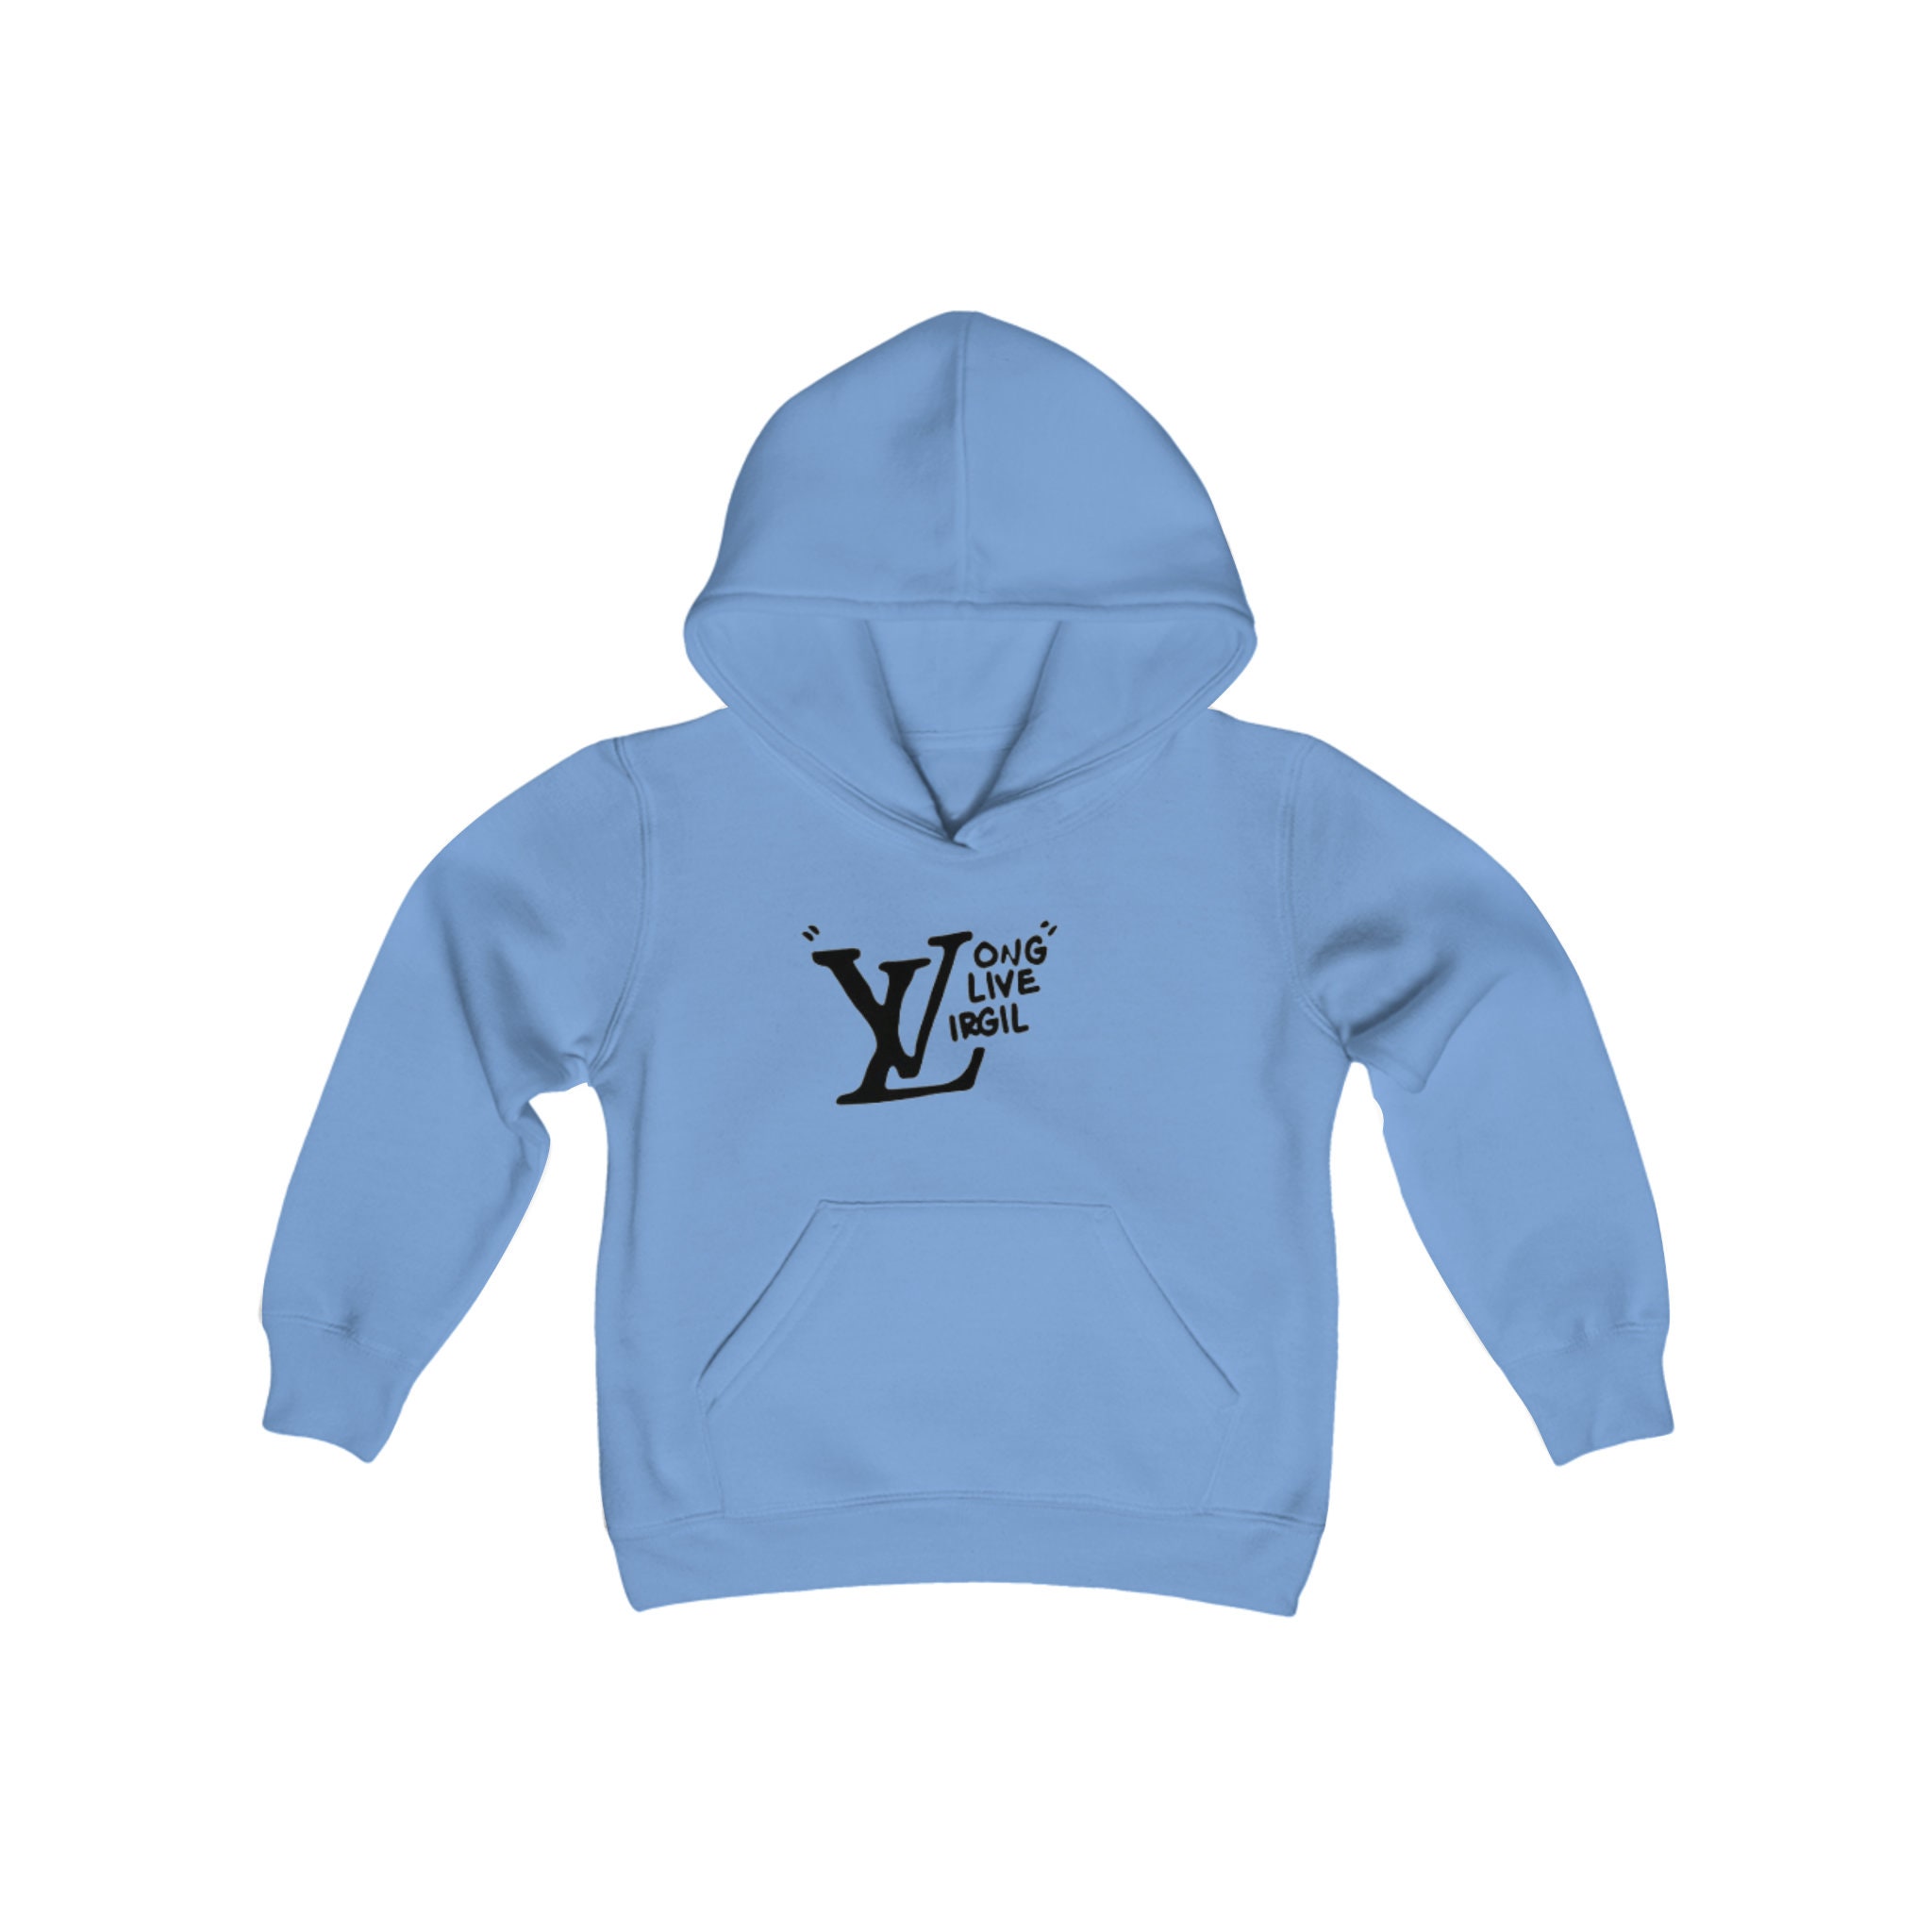 long live virgil hoodie